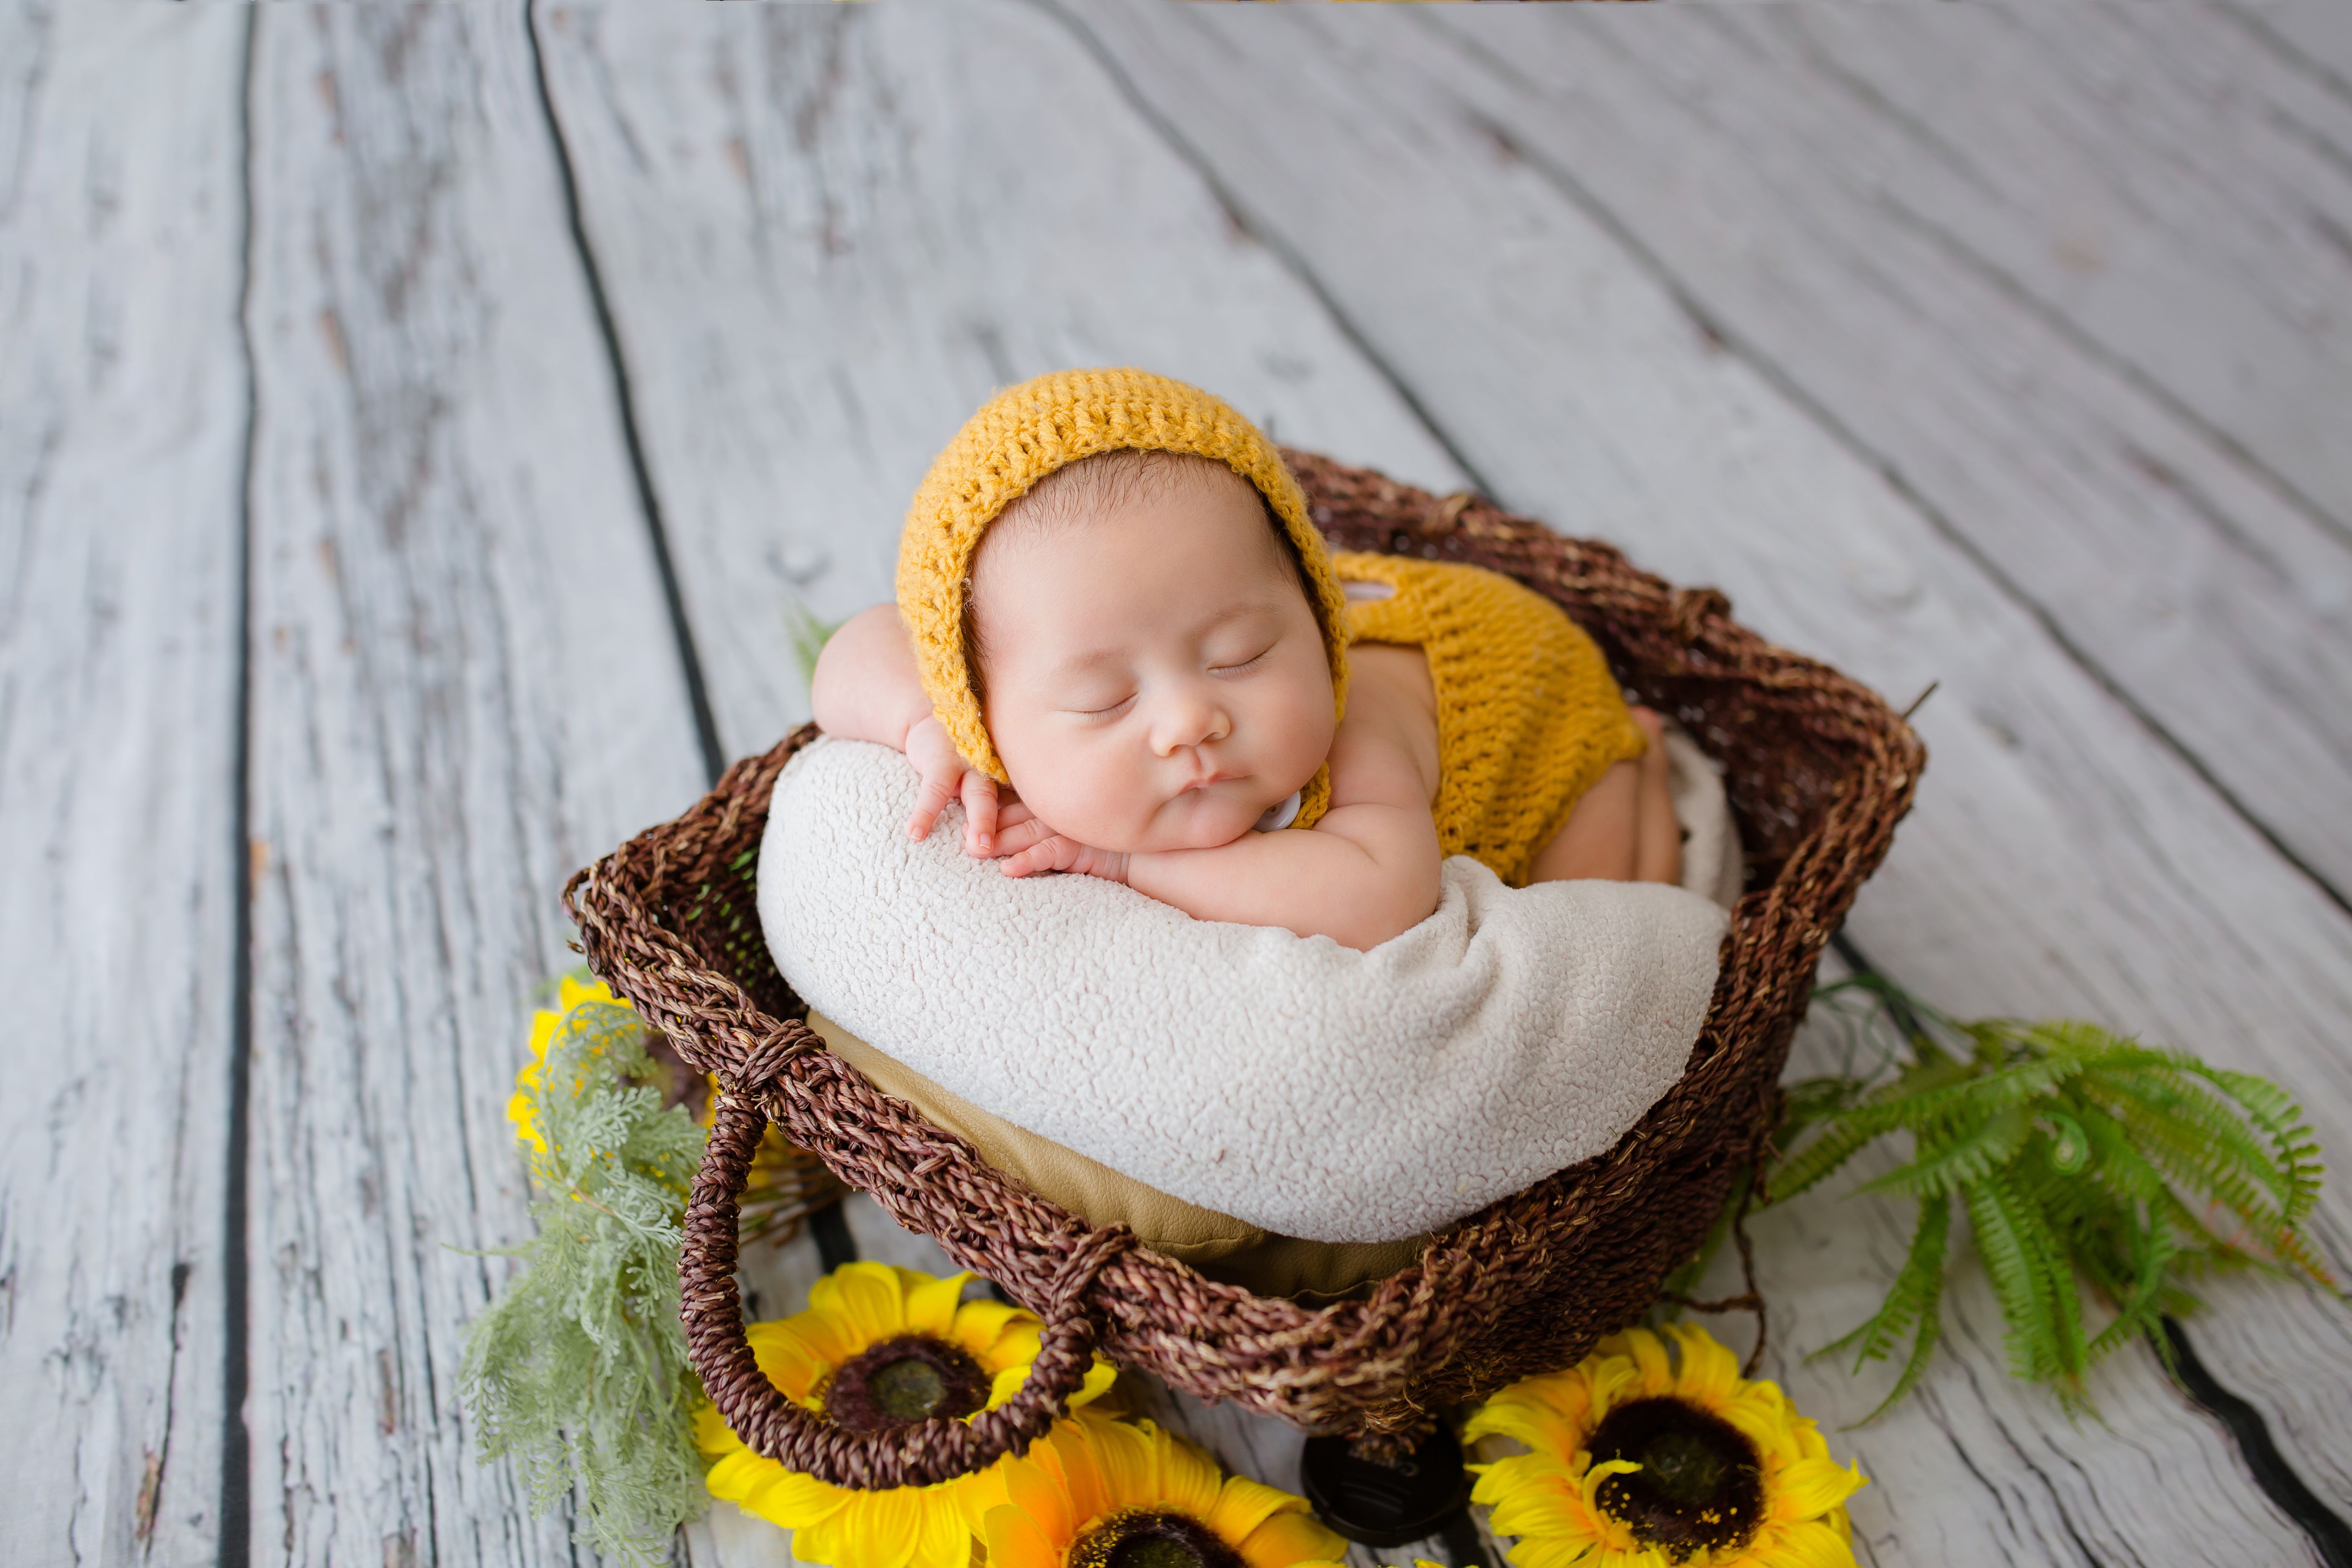 Newborn 4K Wallpaper, Crochet baby costume, Yellow dress, Sleeping baby, Basket, Sunflowers, Cute